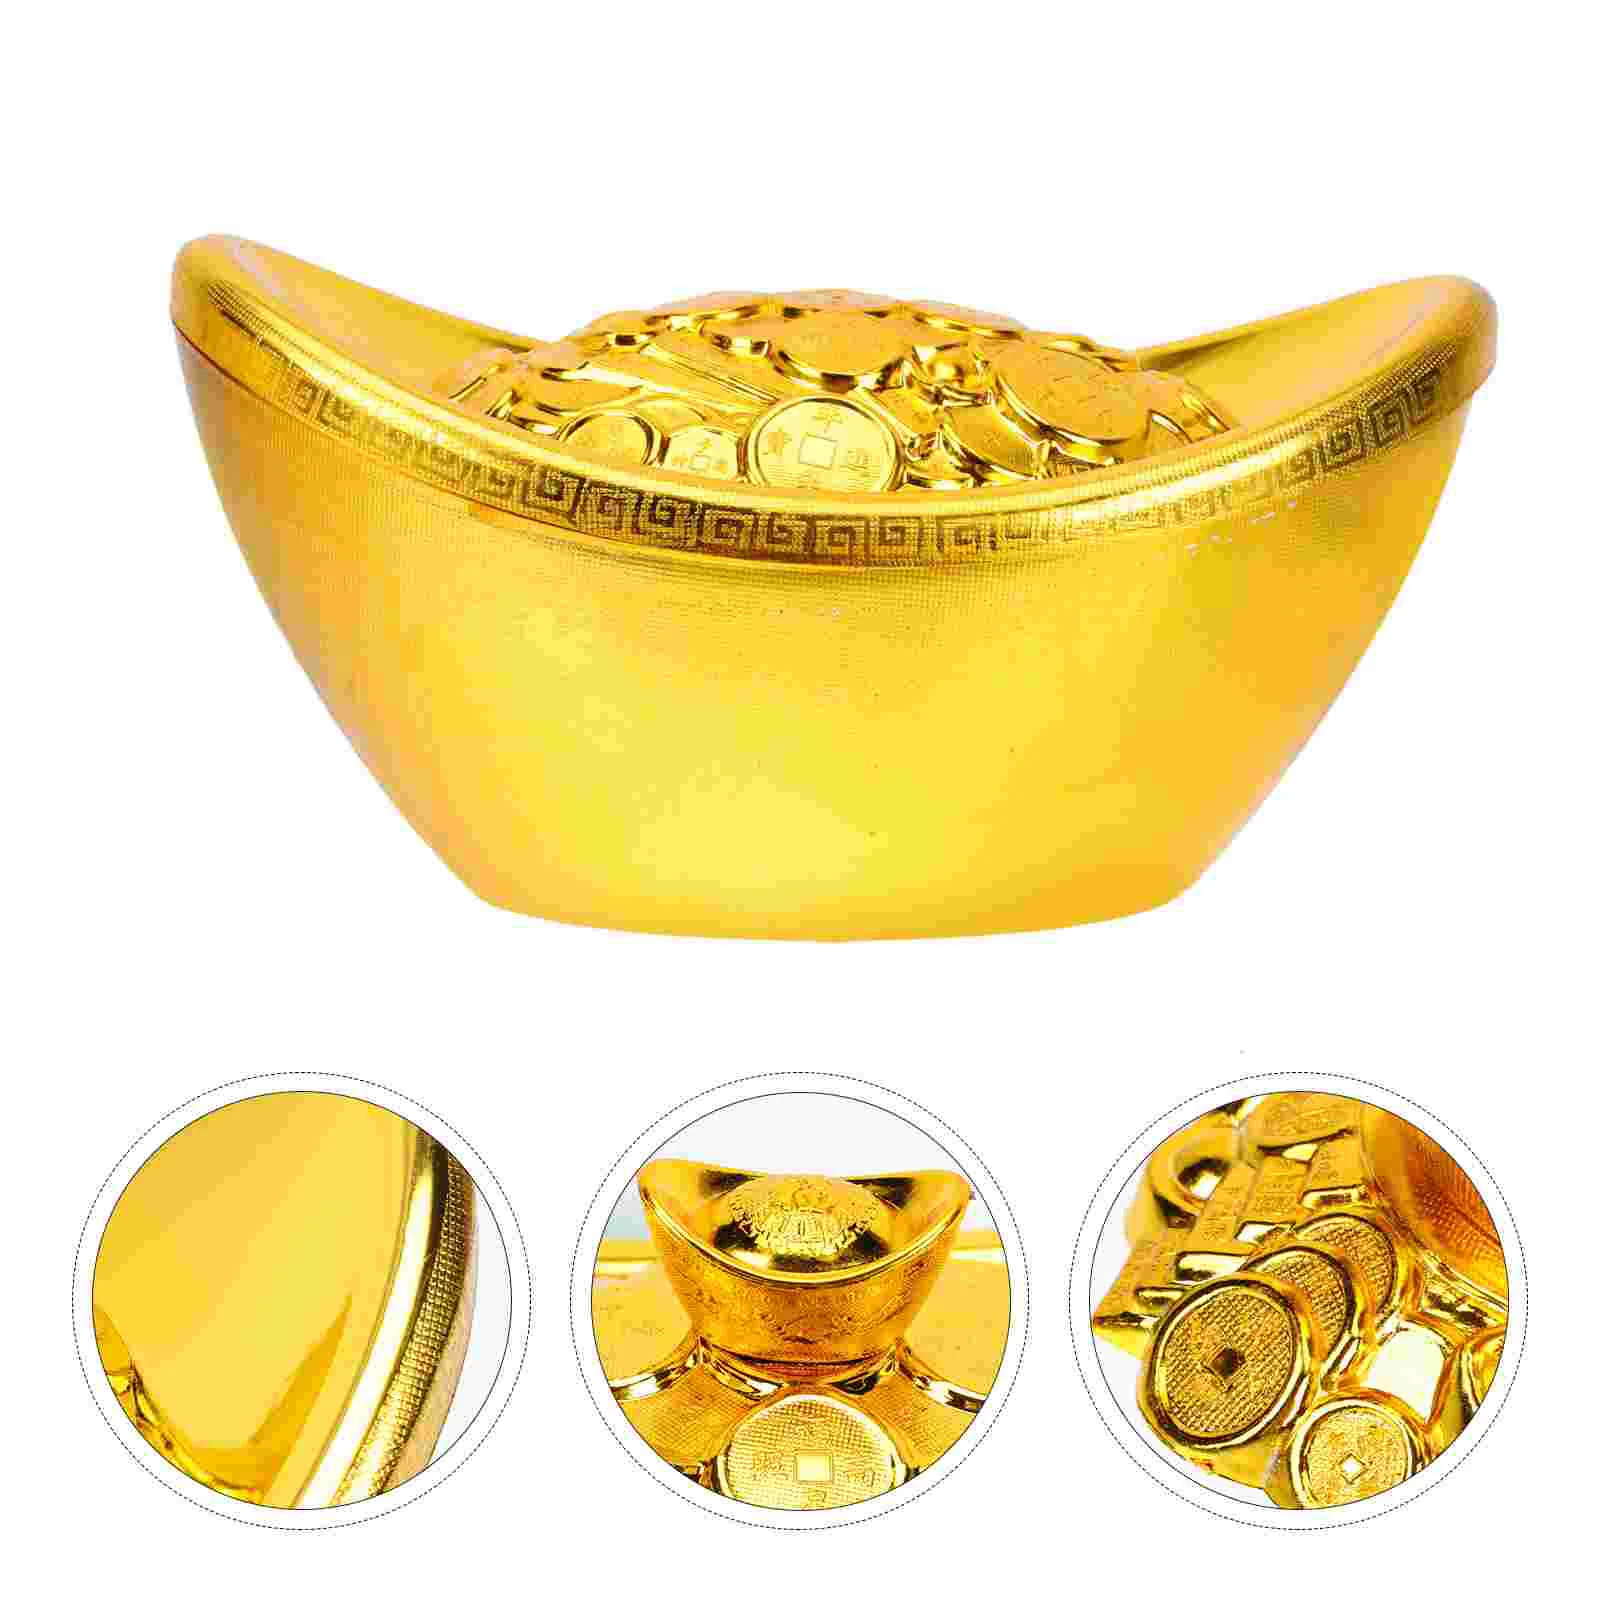 

1pc Candy Storage Box Gold Ingot Shape Candy Boxes Gold Ingot Desktop Decor